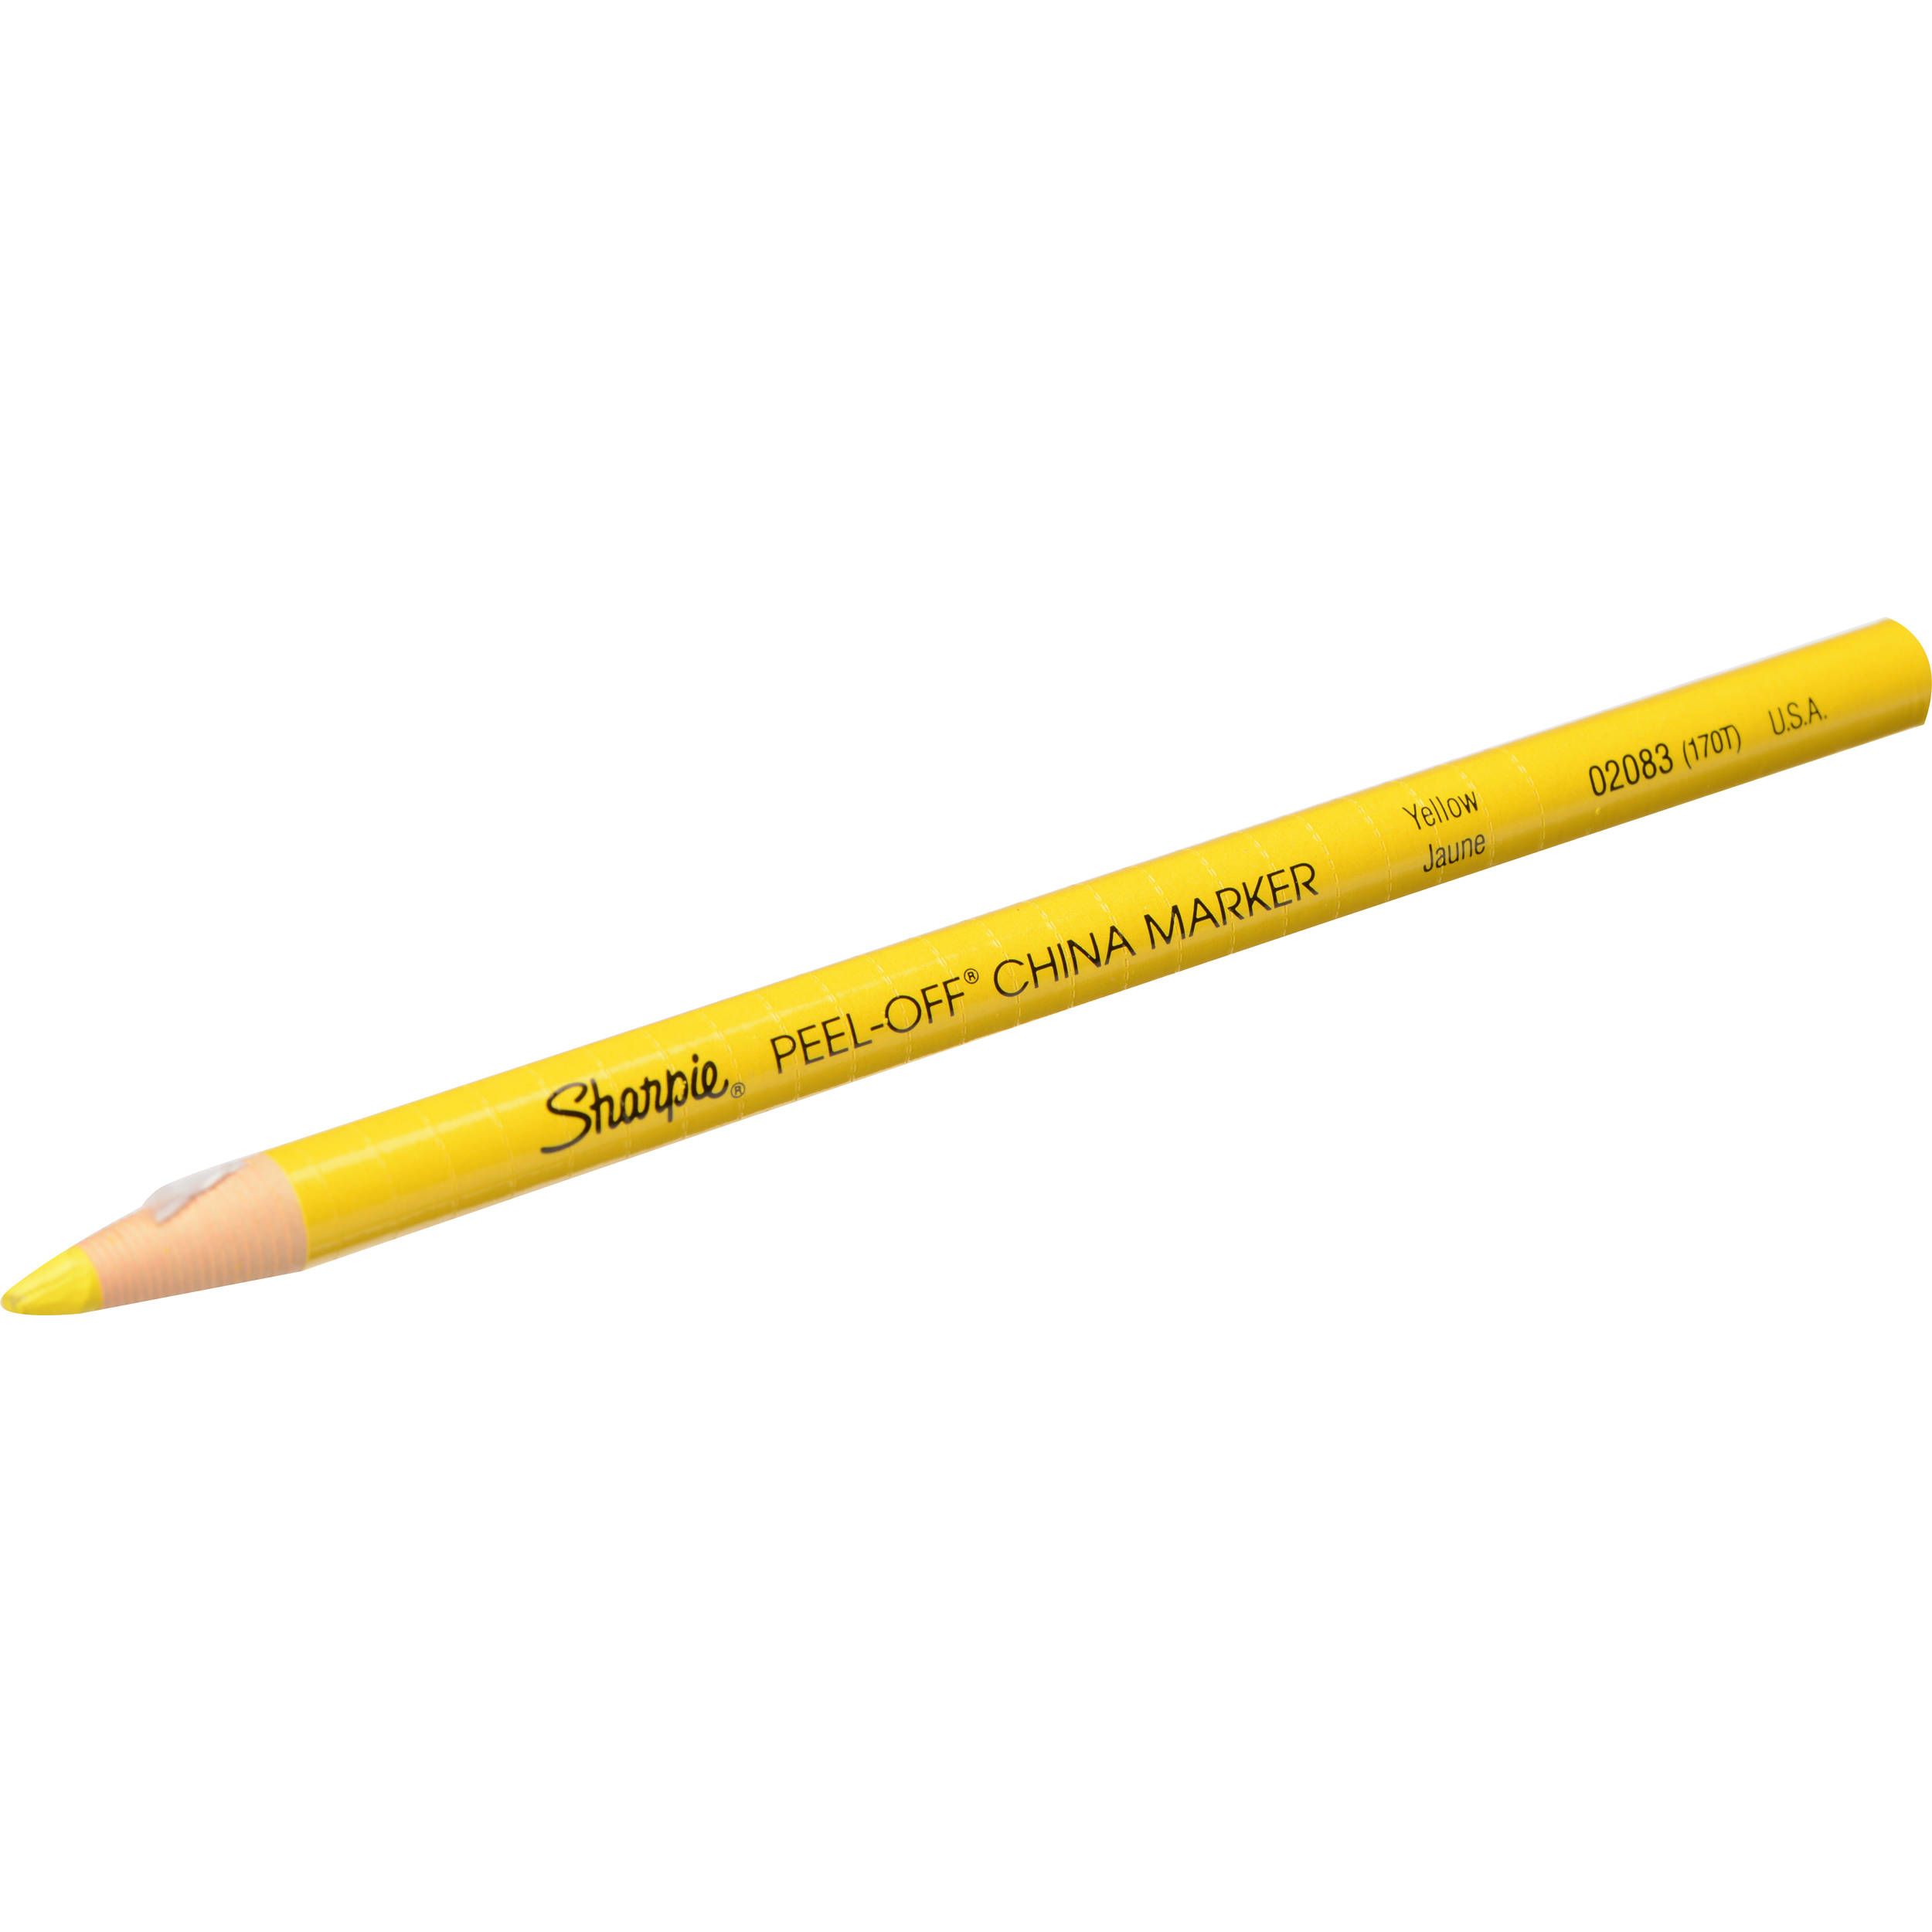 Berol China Marker (Grease Pencil)-Yellow BR-170T1 B&H Photo